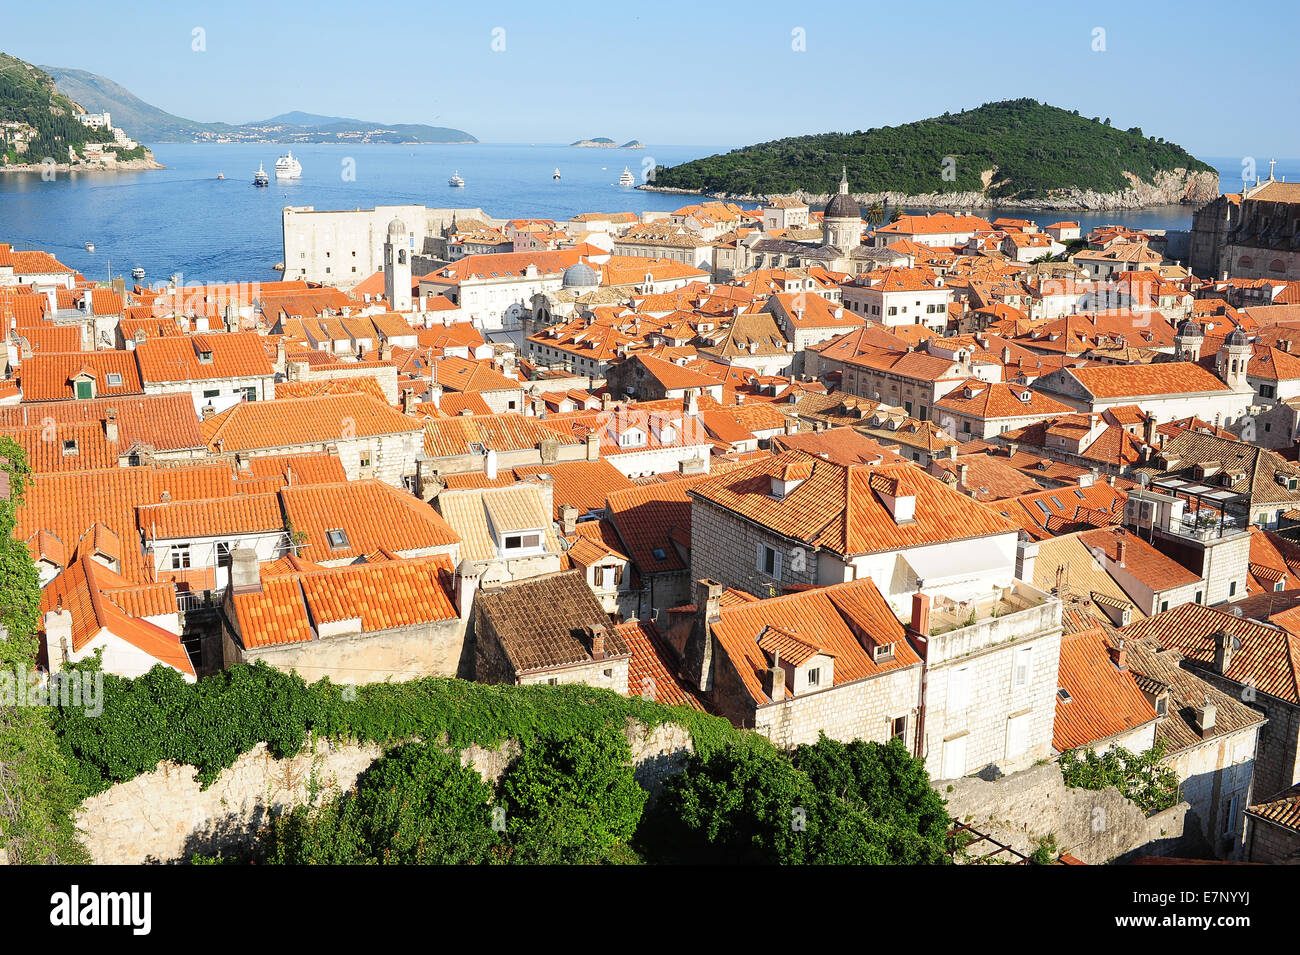 Castle, Adriatic, ancient, architecture, bright, city, cityscape, coast, coastline, Croatia, Balkans, Europe, Dalmatia, Dubrovni Stock Photo